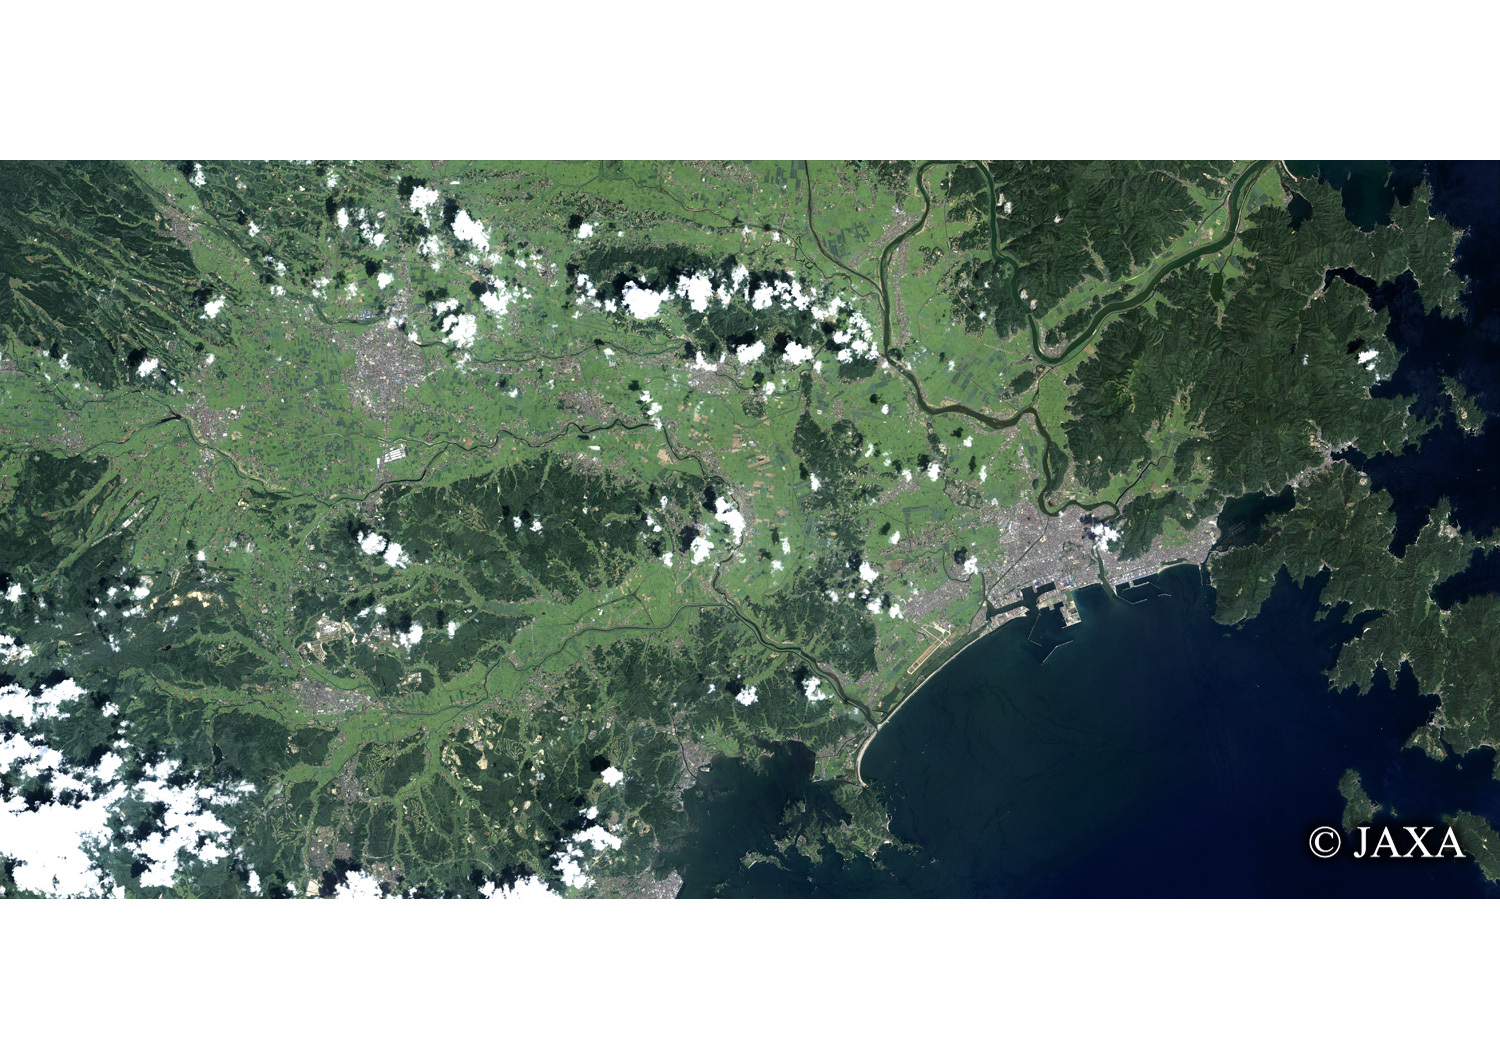 だいちから見た日本の都市 震災前の石巻市-東松島市:衛星画像